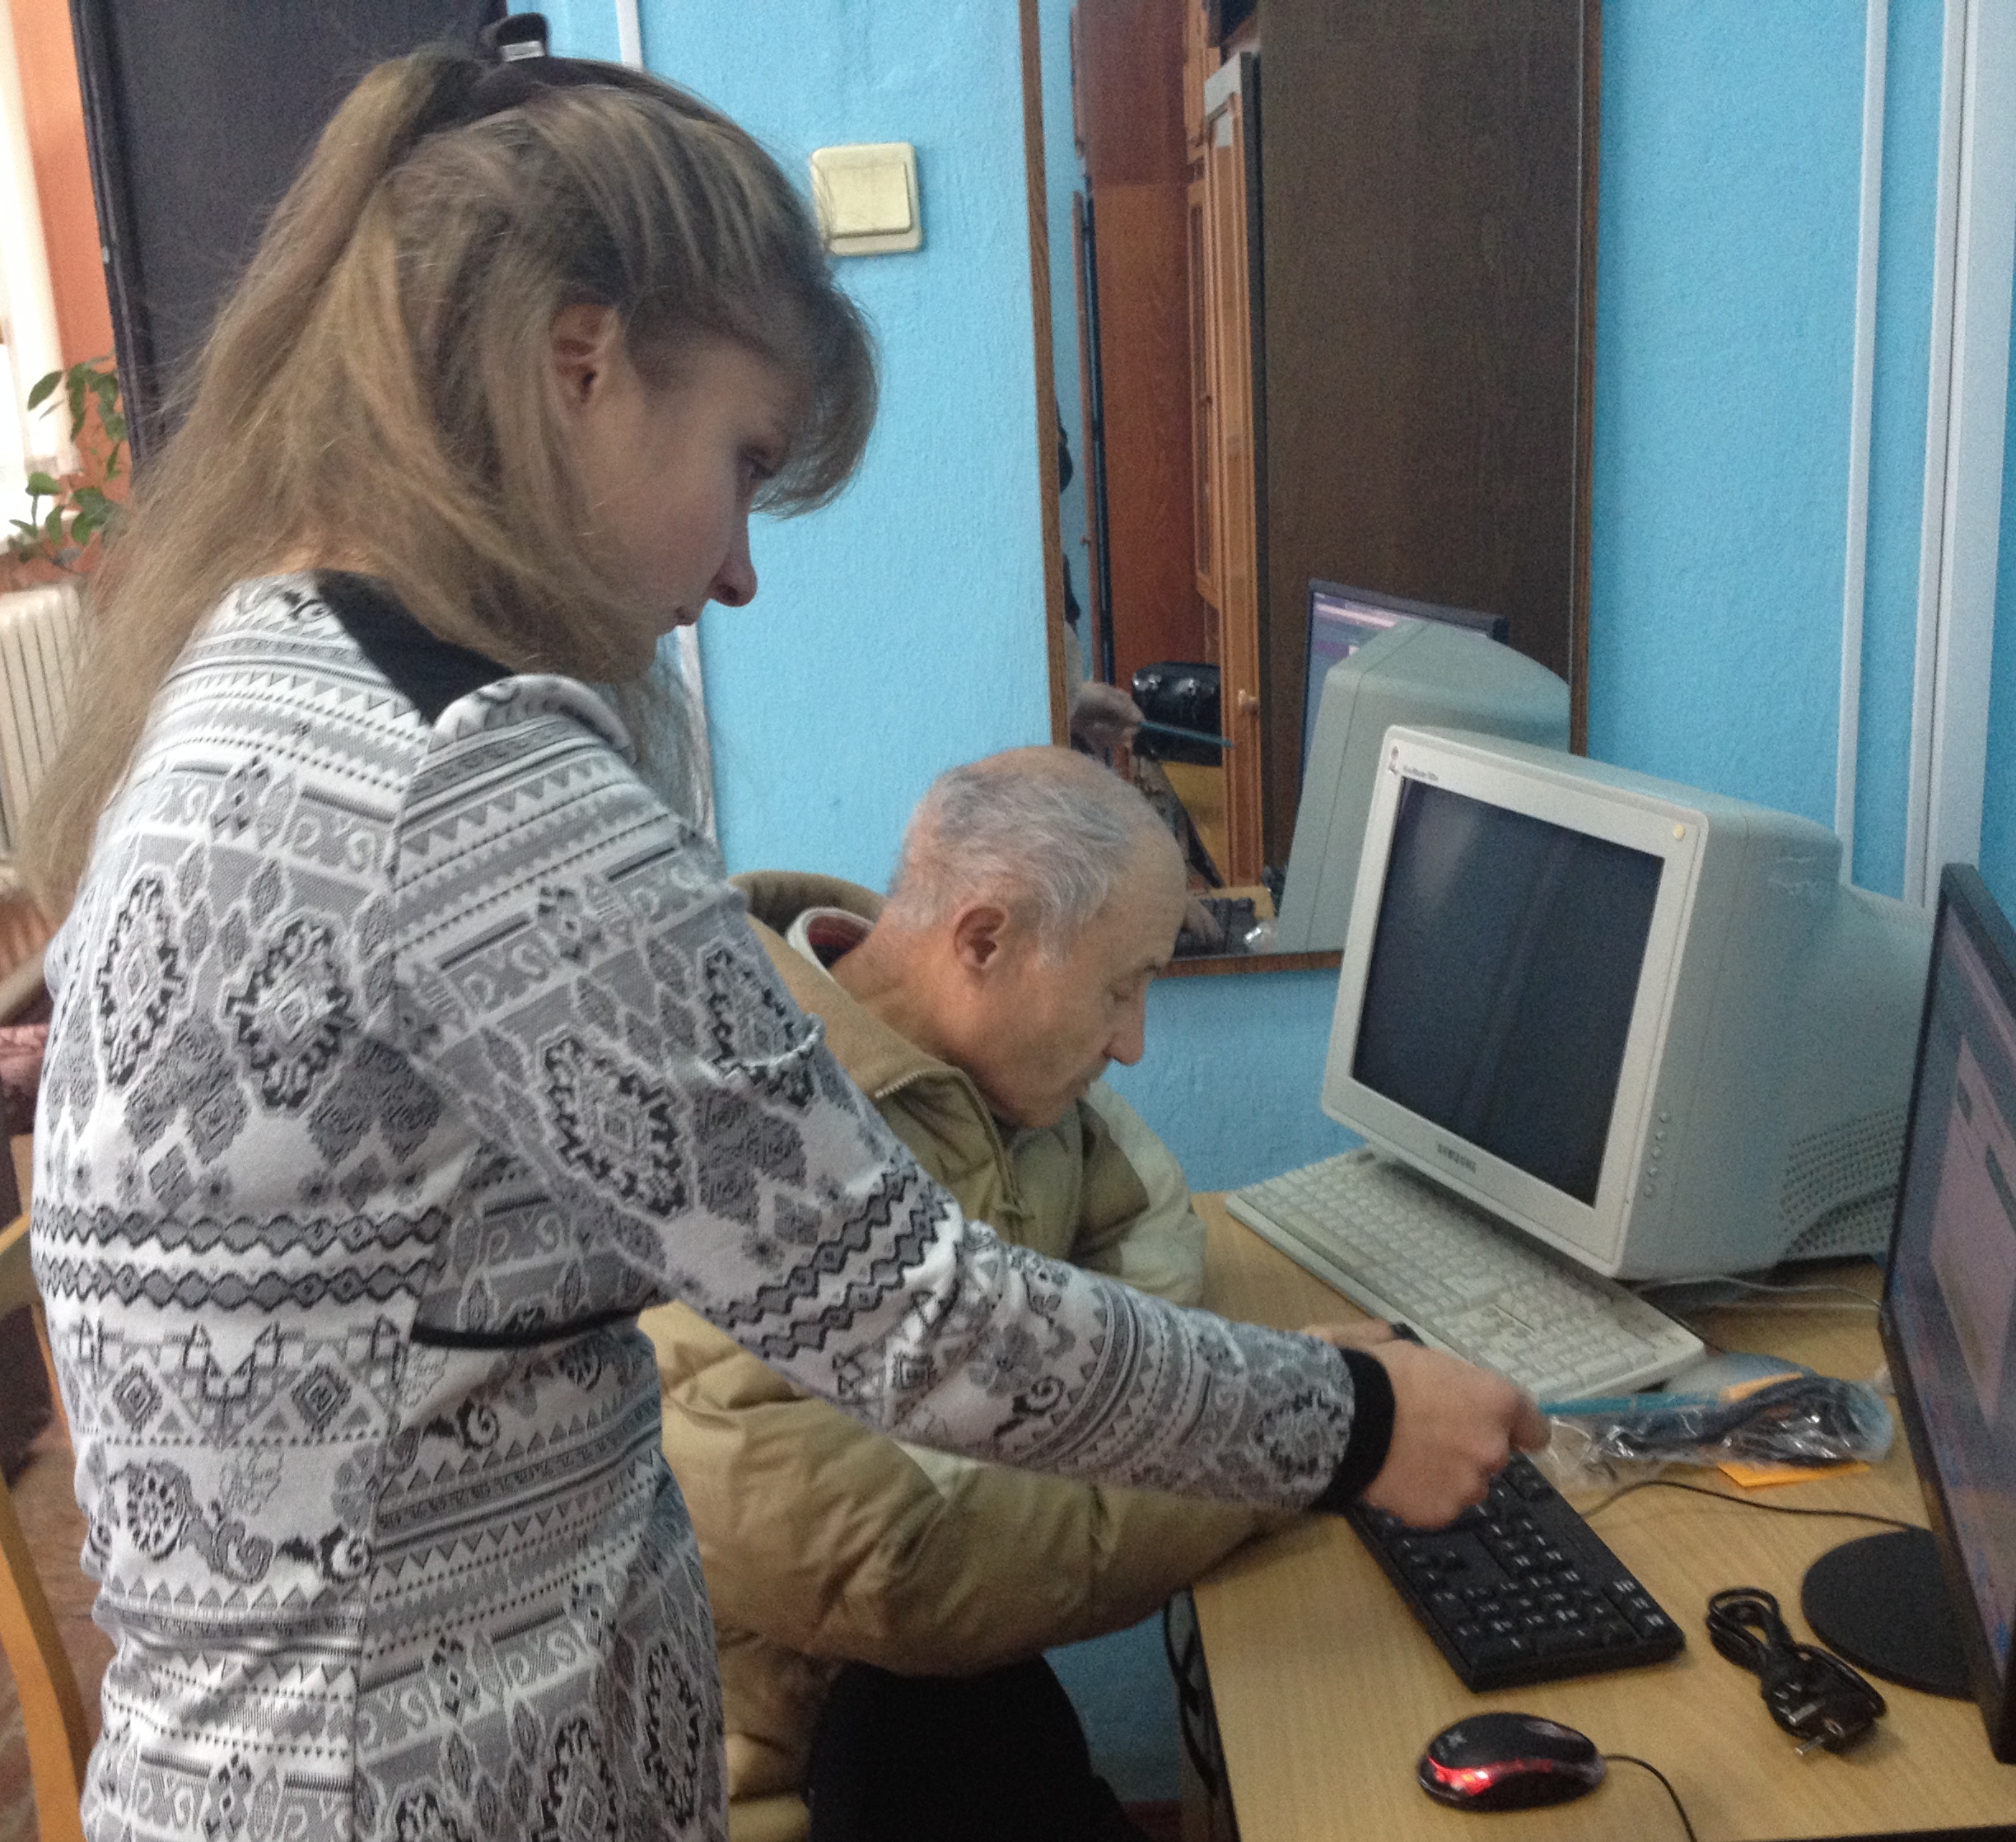 02 hot navchannya - Буковинців навчають опановувати сучасні технології та допомагають зареєструватися на веб-порталі Фонду